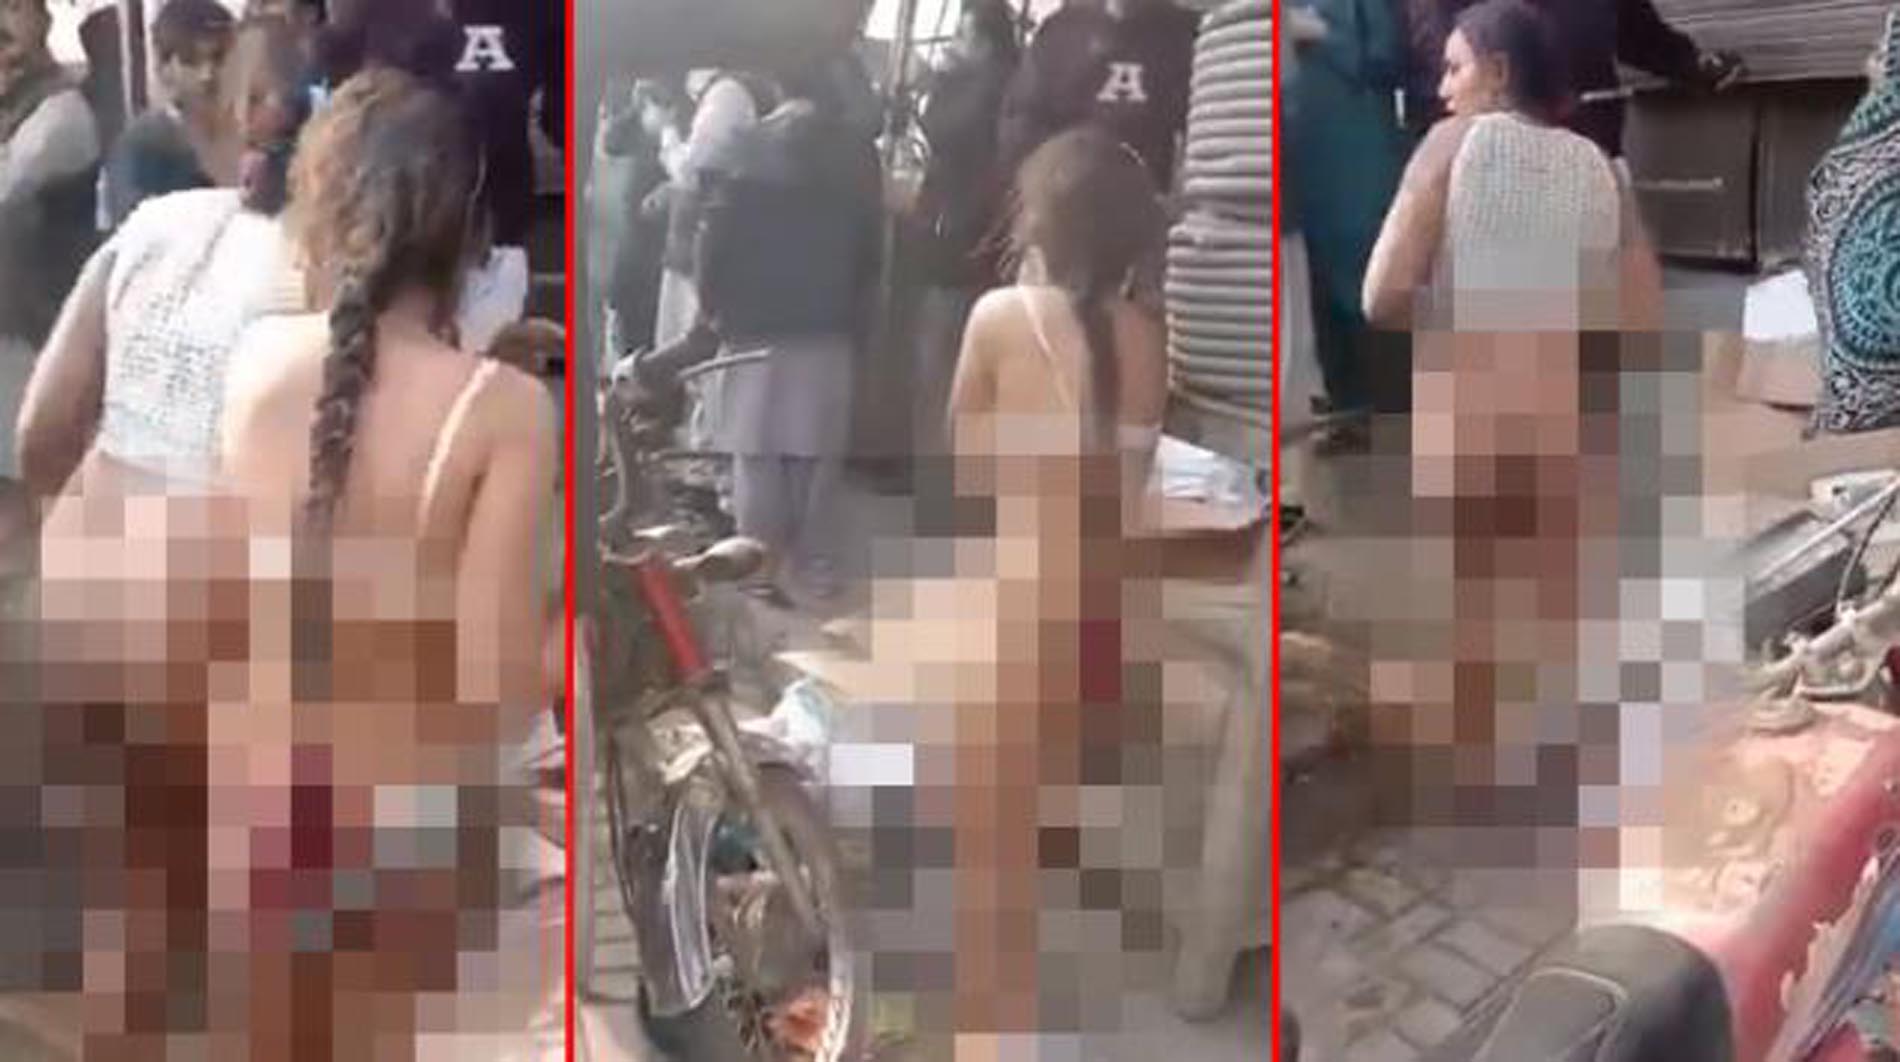 Pakistan'da bir kadına şiddet olayı daha! Hırsızlık yaptıkları gerekçesiyle 4 kadını sokak ortasında çırılçıplak soyup, darp ettiler!